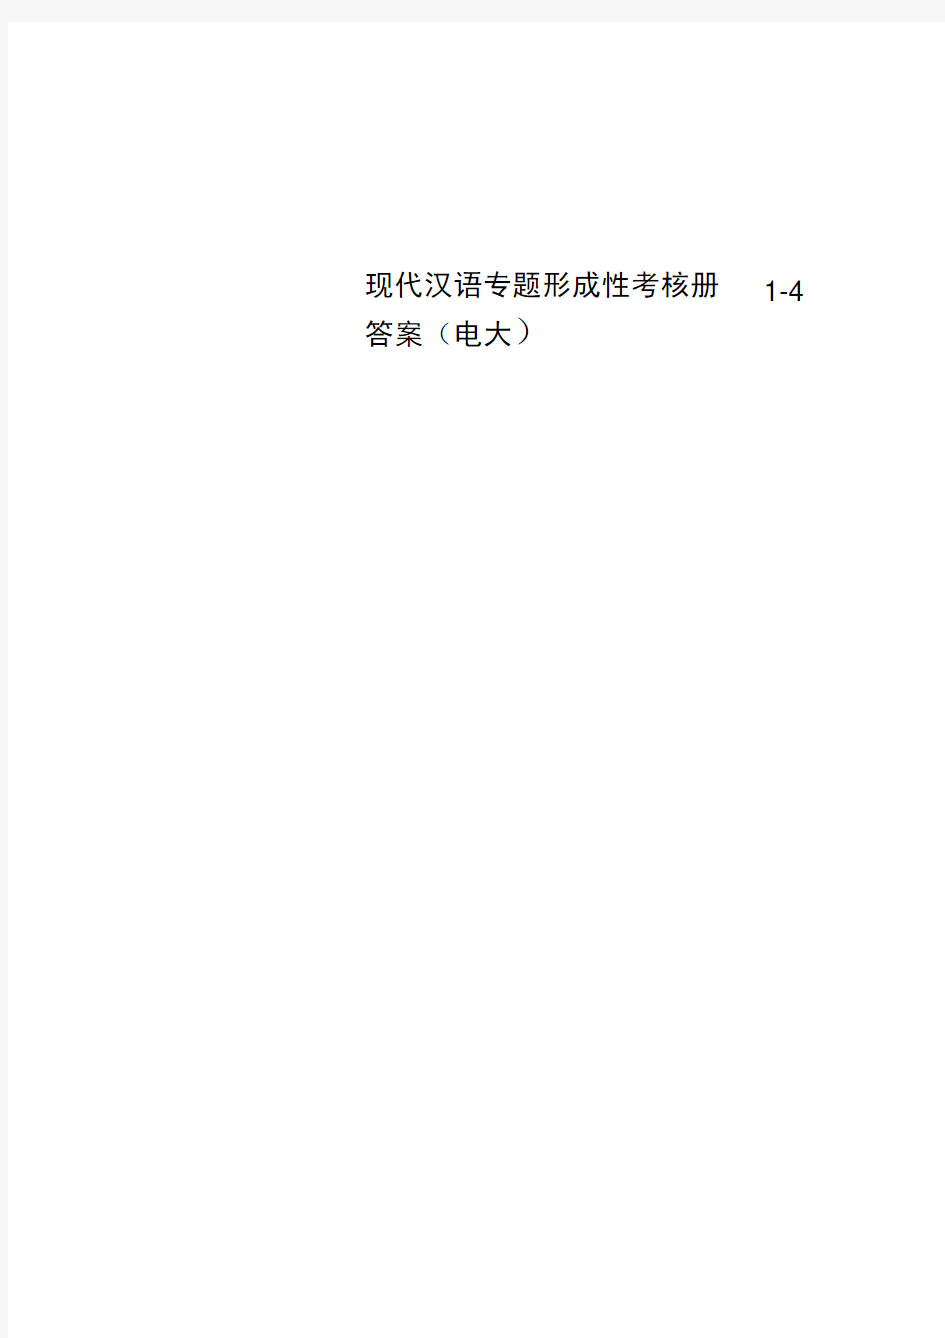 现代汉语专题形成性考核册1-4标准答案(电大)